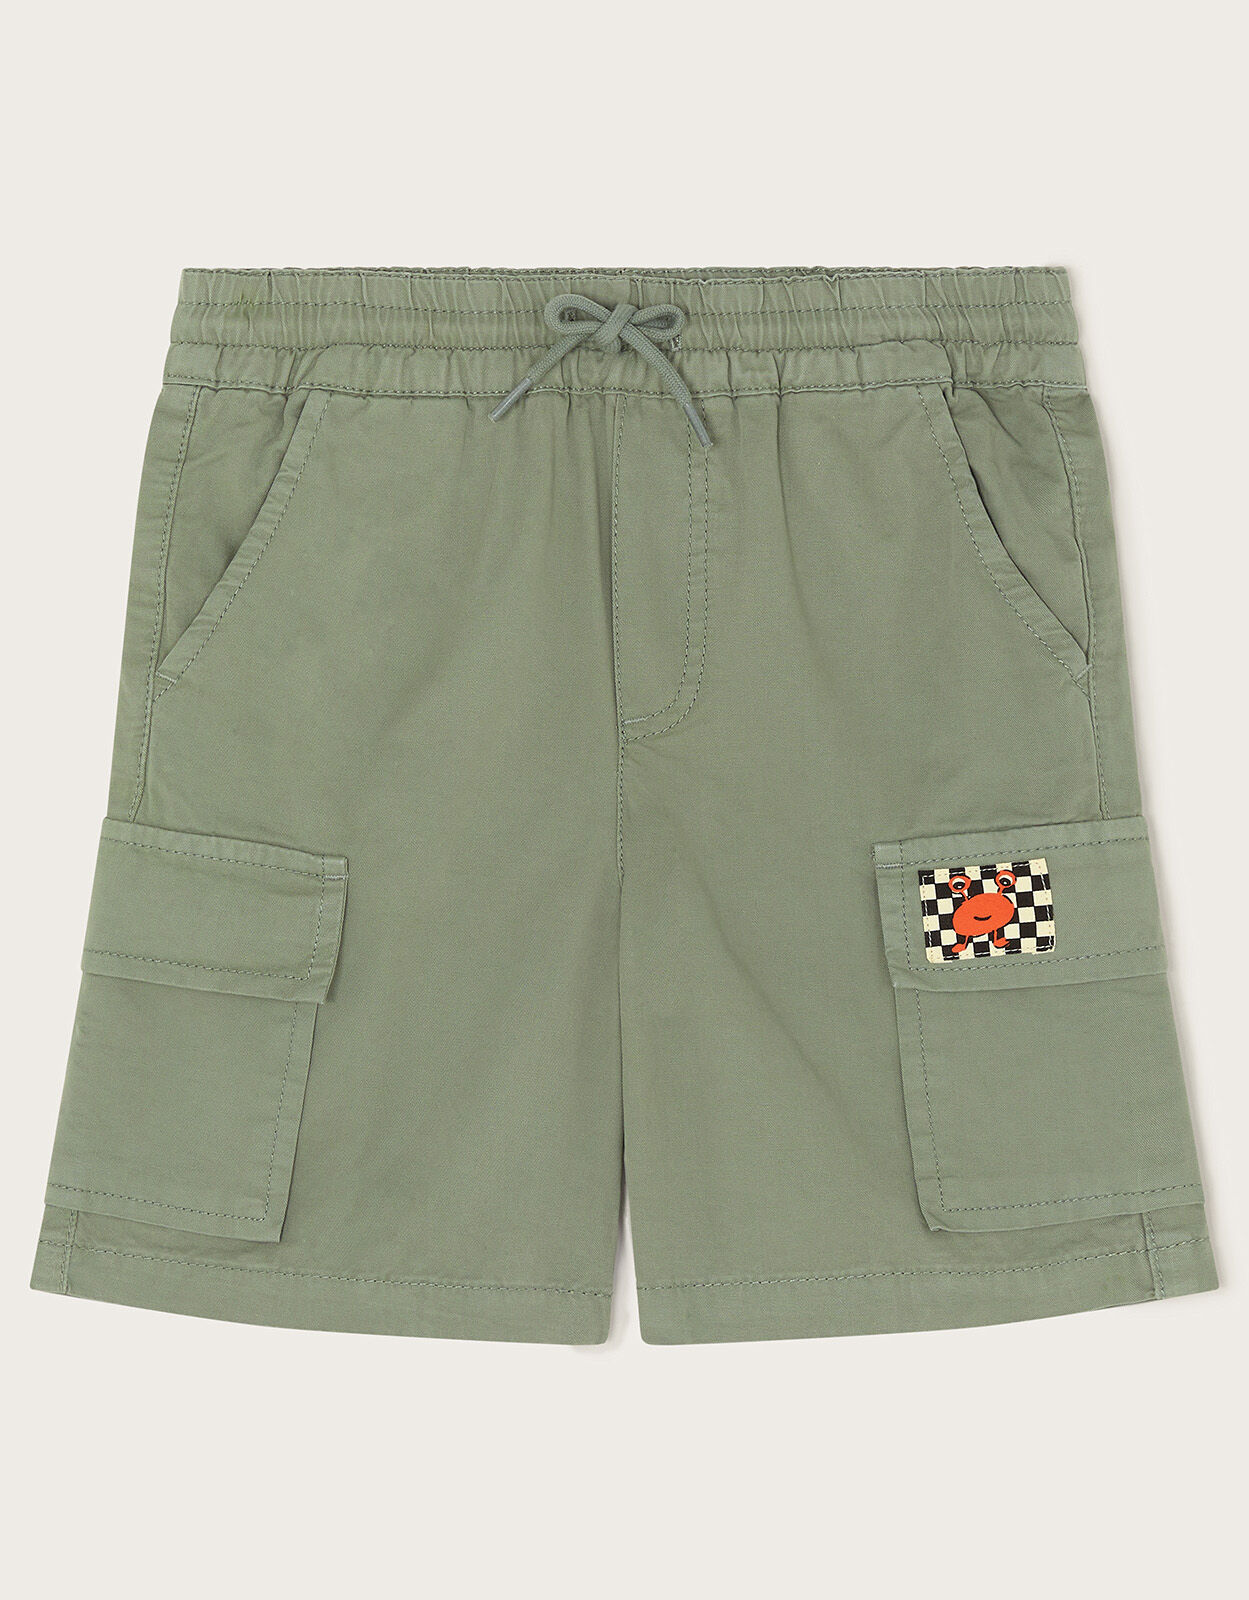 Golf Trousers Shorts - Buy Golf Trousers Shorts online in India